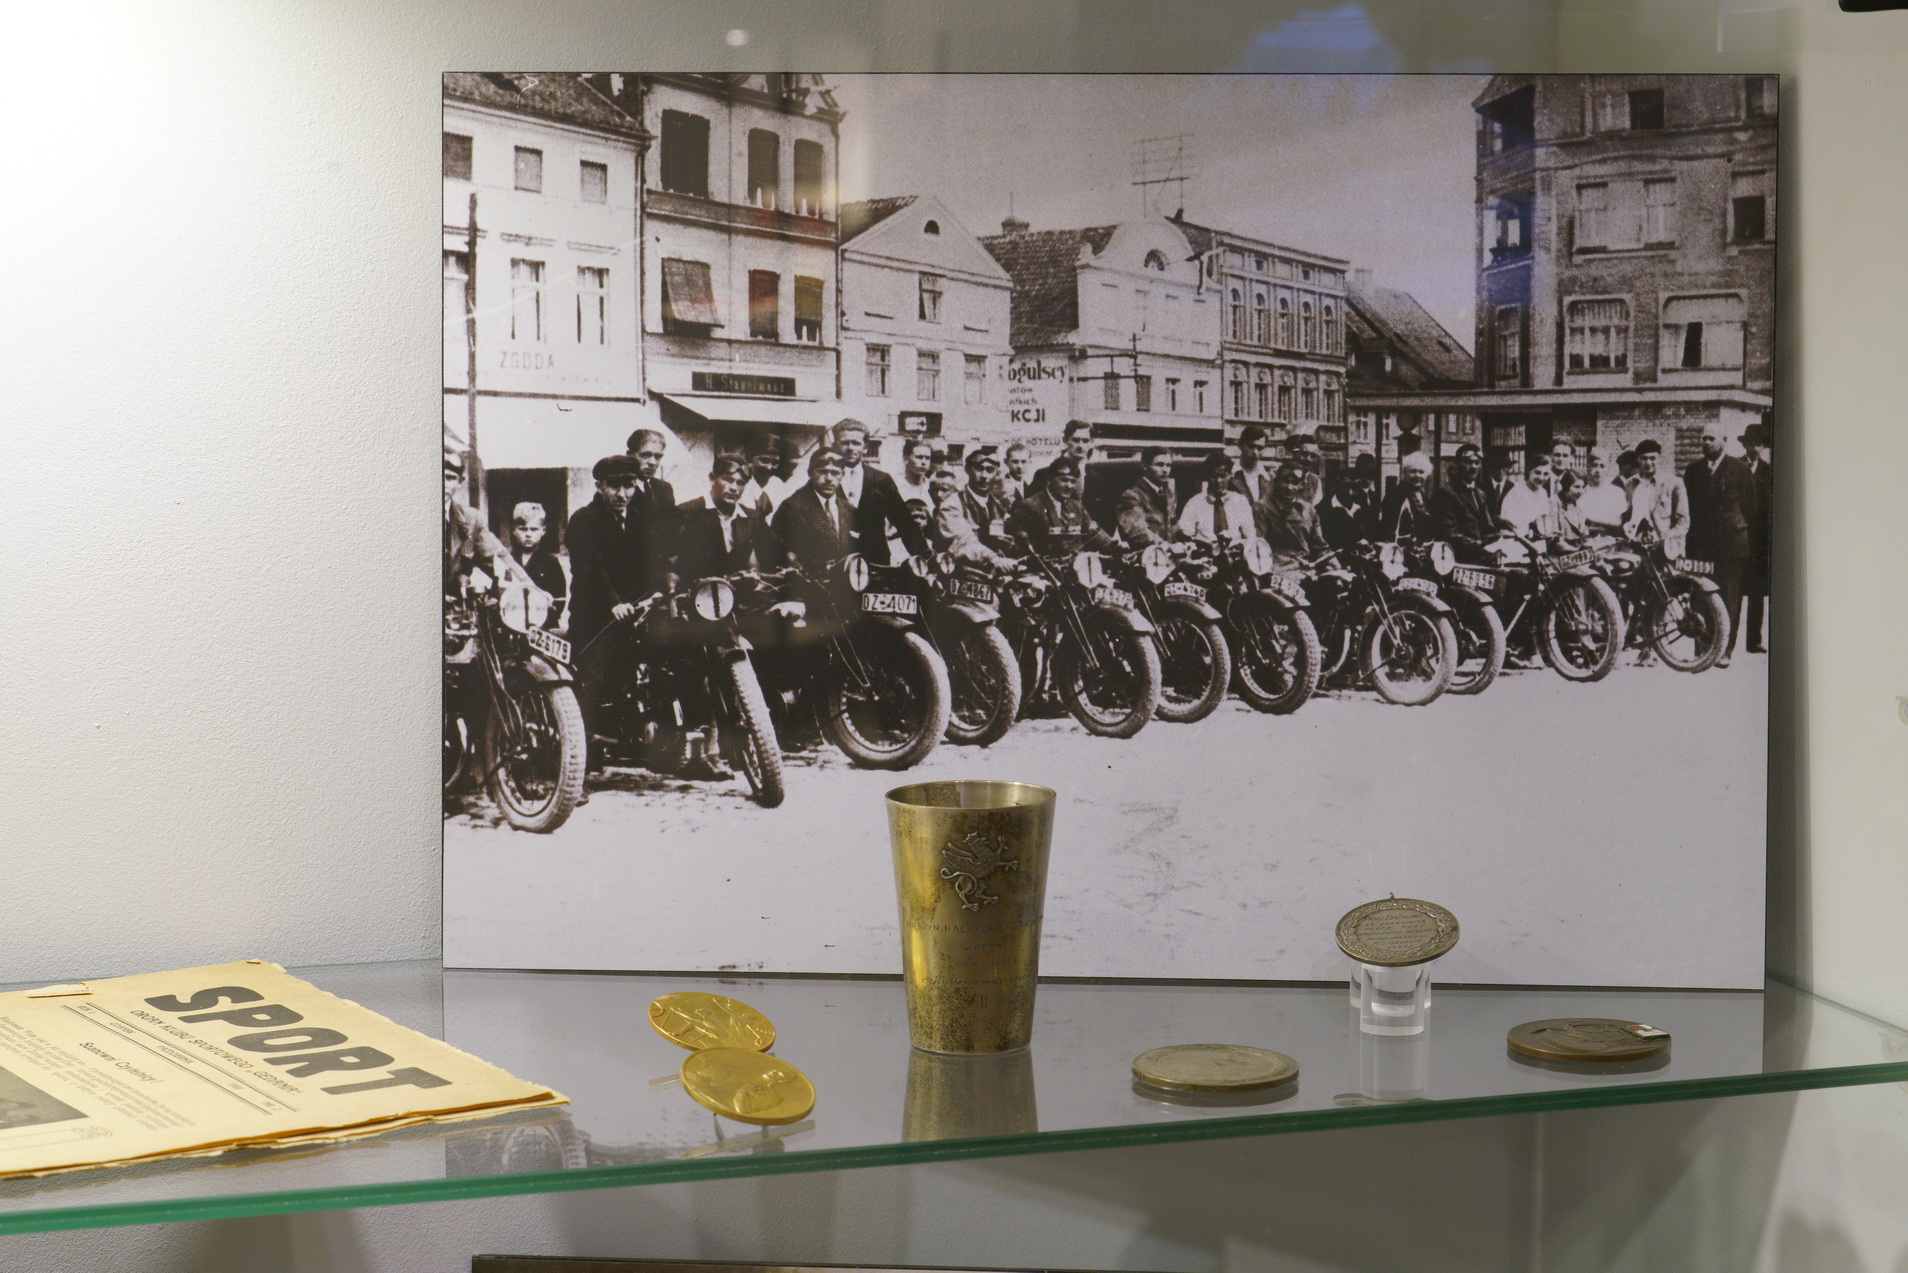 Pośrodku stoi zdjęcie czarno-białe, na nim motocykle stojące w rzędzie, obok kierowcy. Przed zdjęciem ułożono medale, kielich. Po lewej leży stara gazeta, na nagłówku napis Sport.